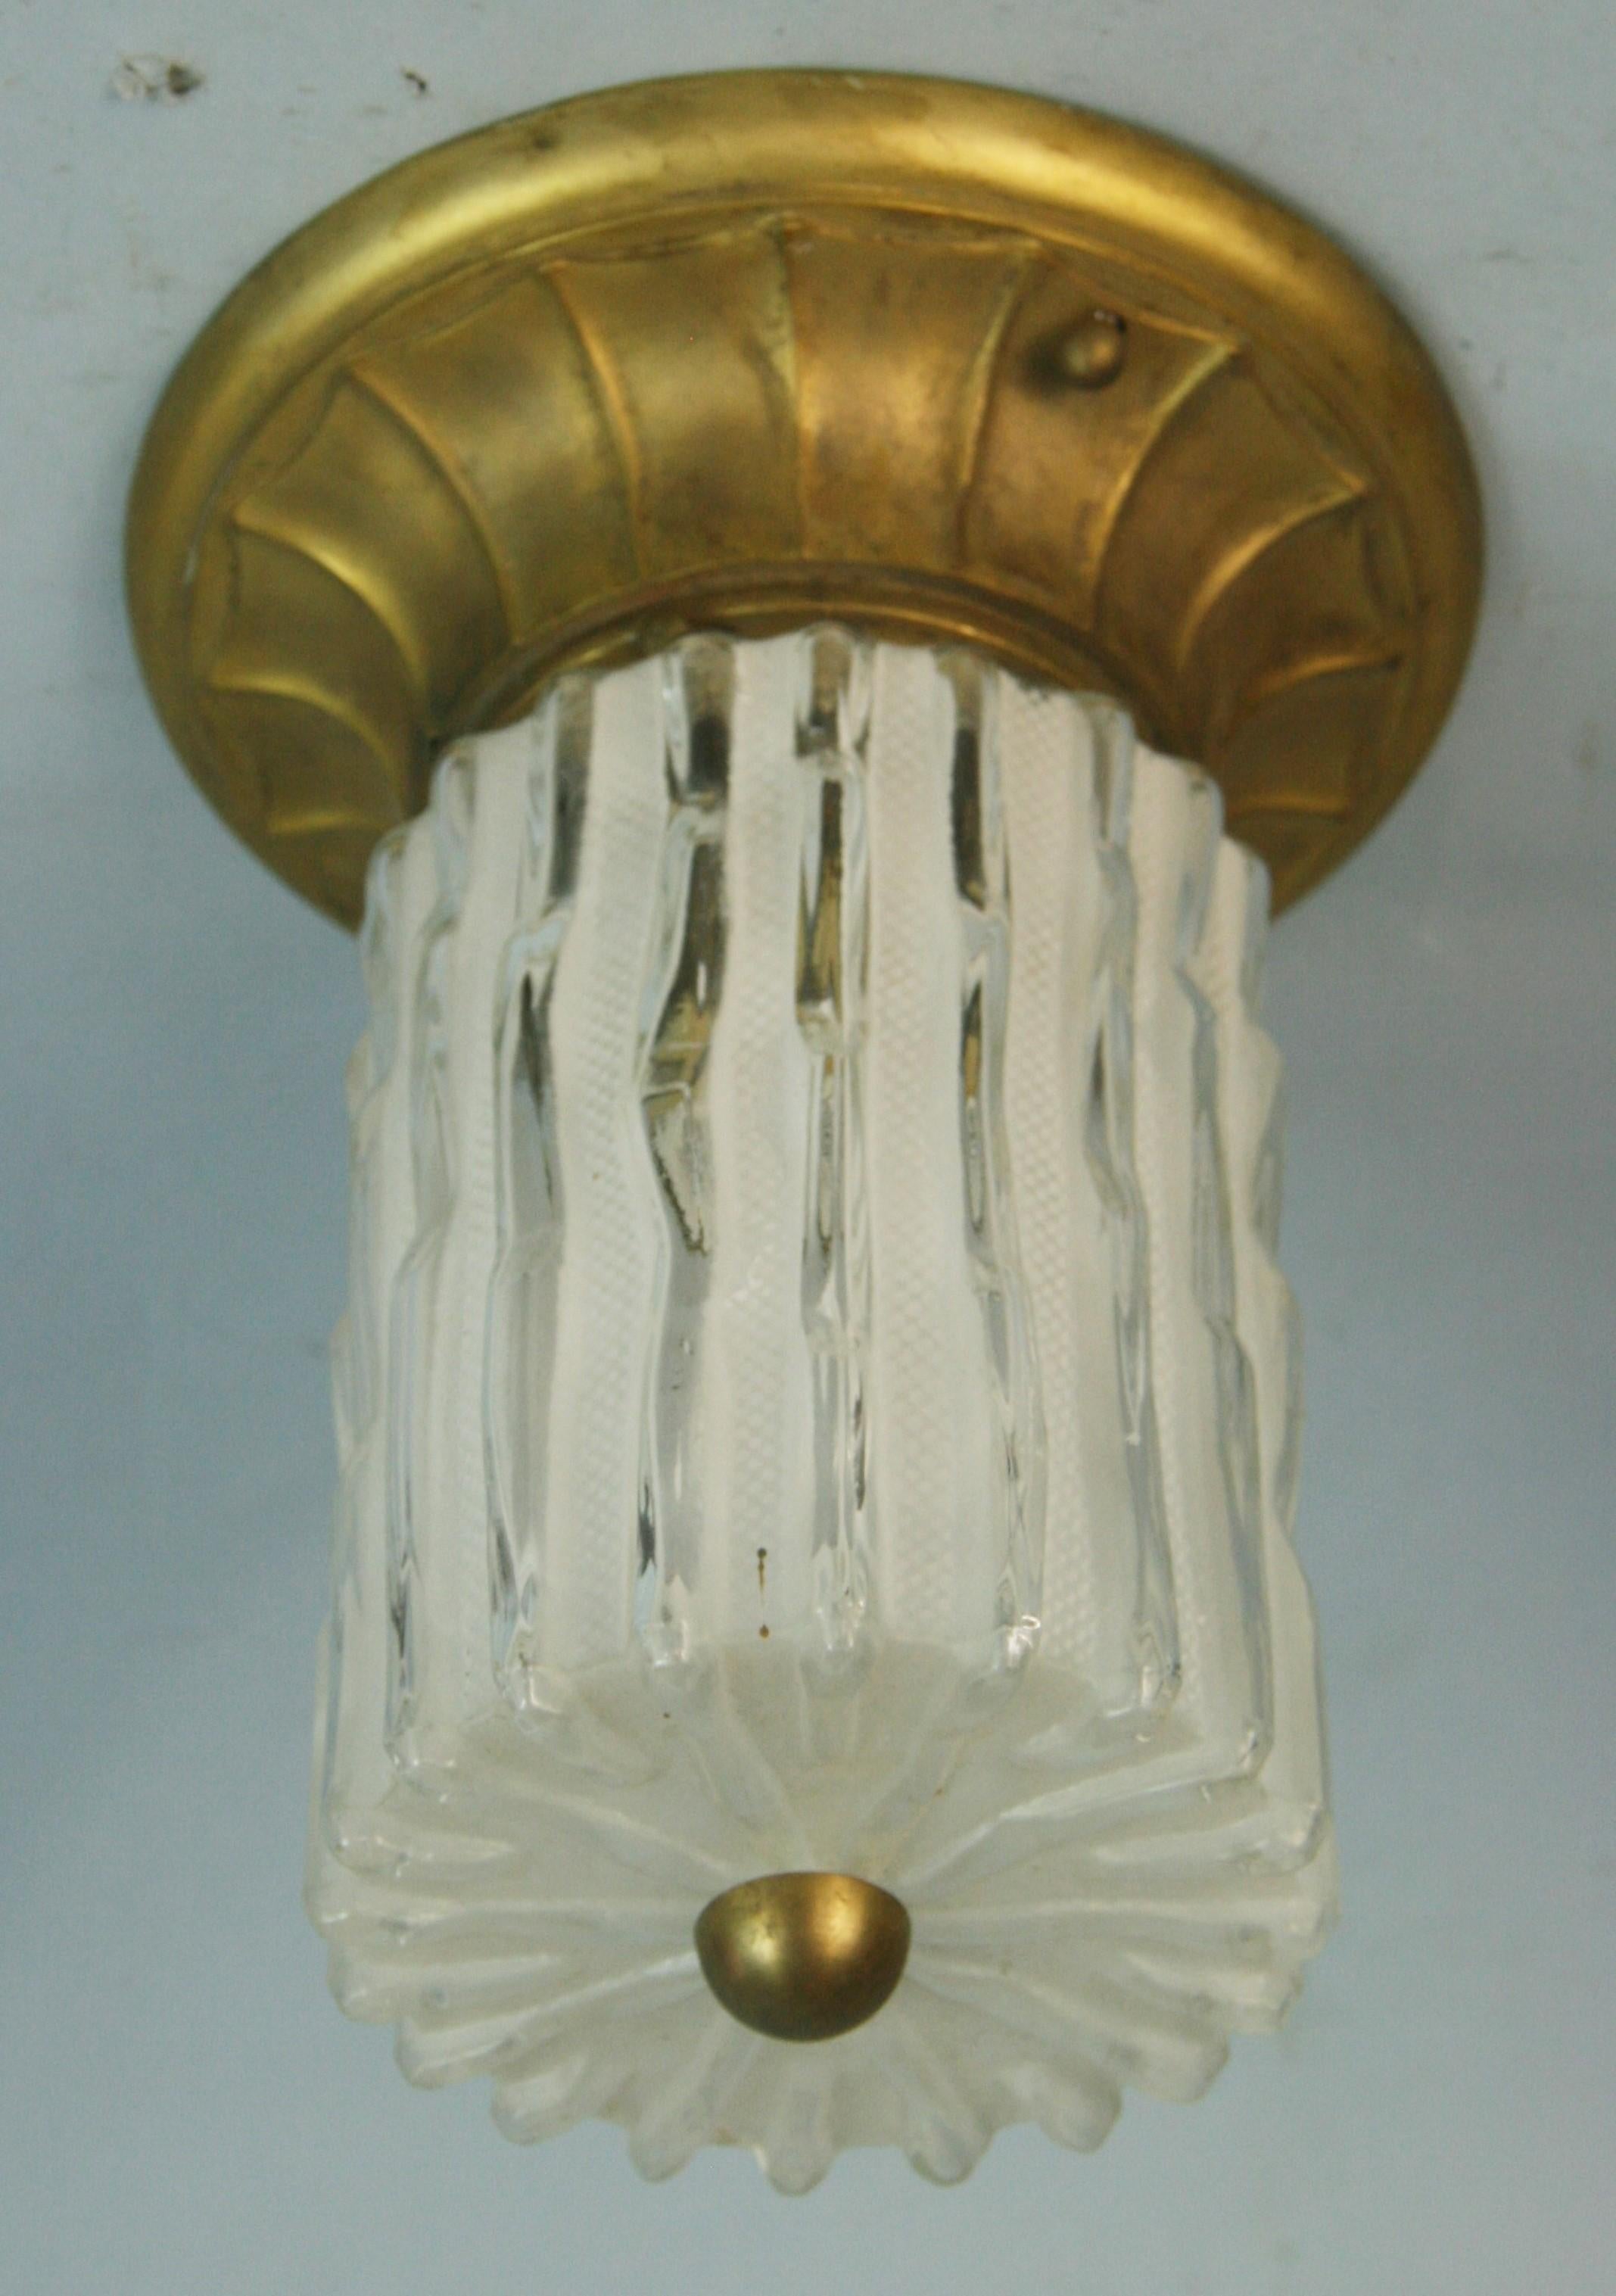 1611 Ein Murano-Glaszylinder auf einem patinierten Bronzering. Eine einzelne Edison-Glühbirne mit max. 60 Watt.
Zwei verfügbar.
Individuelle Preisgestaltung.